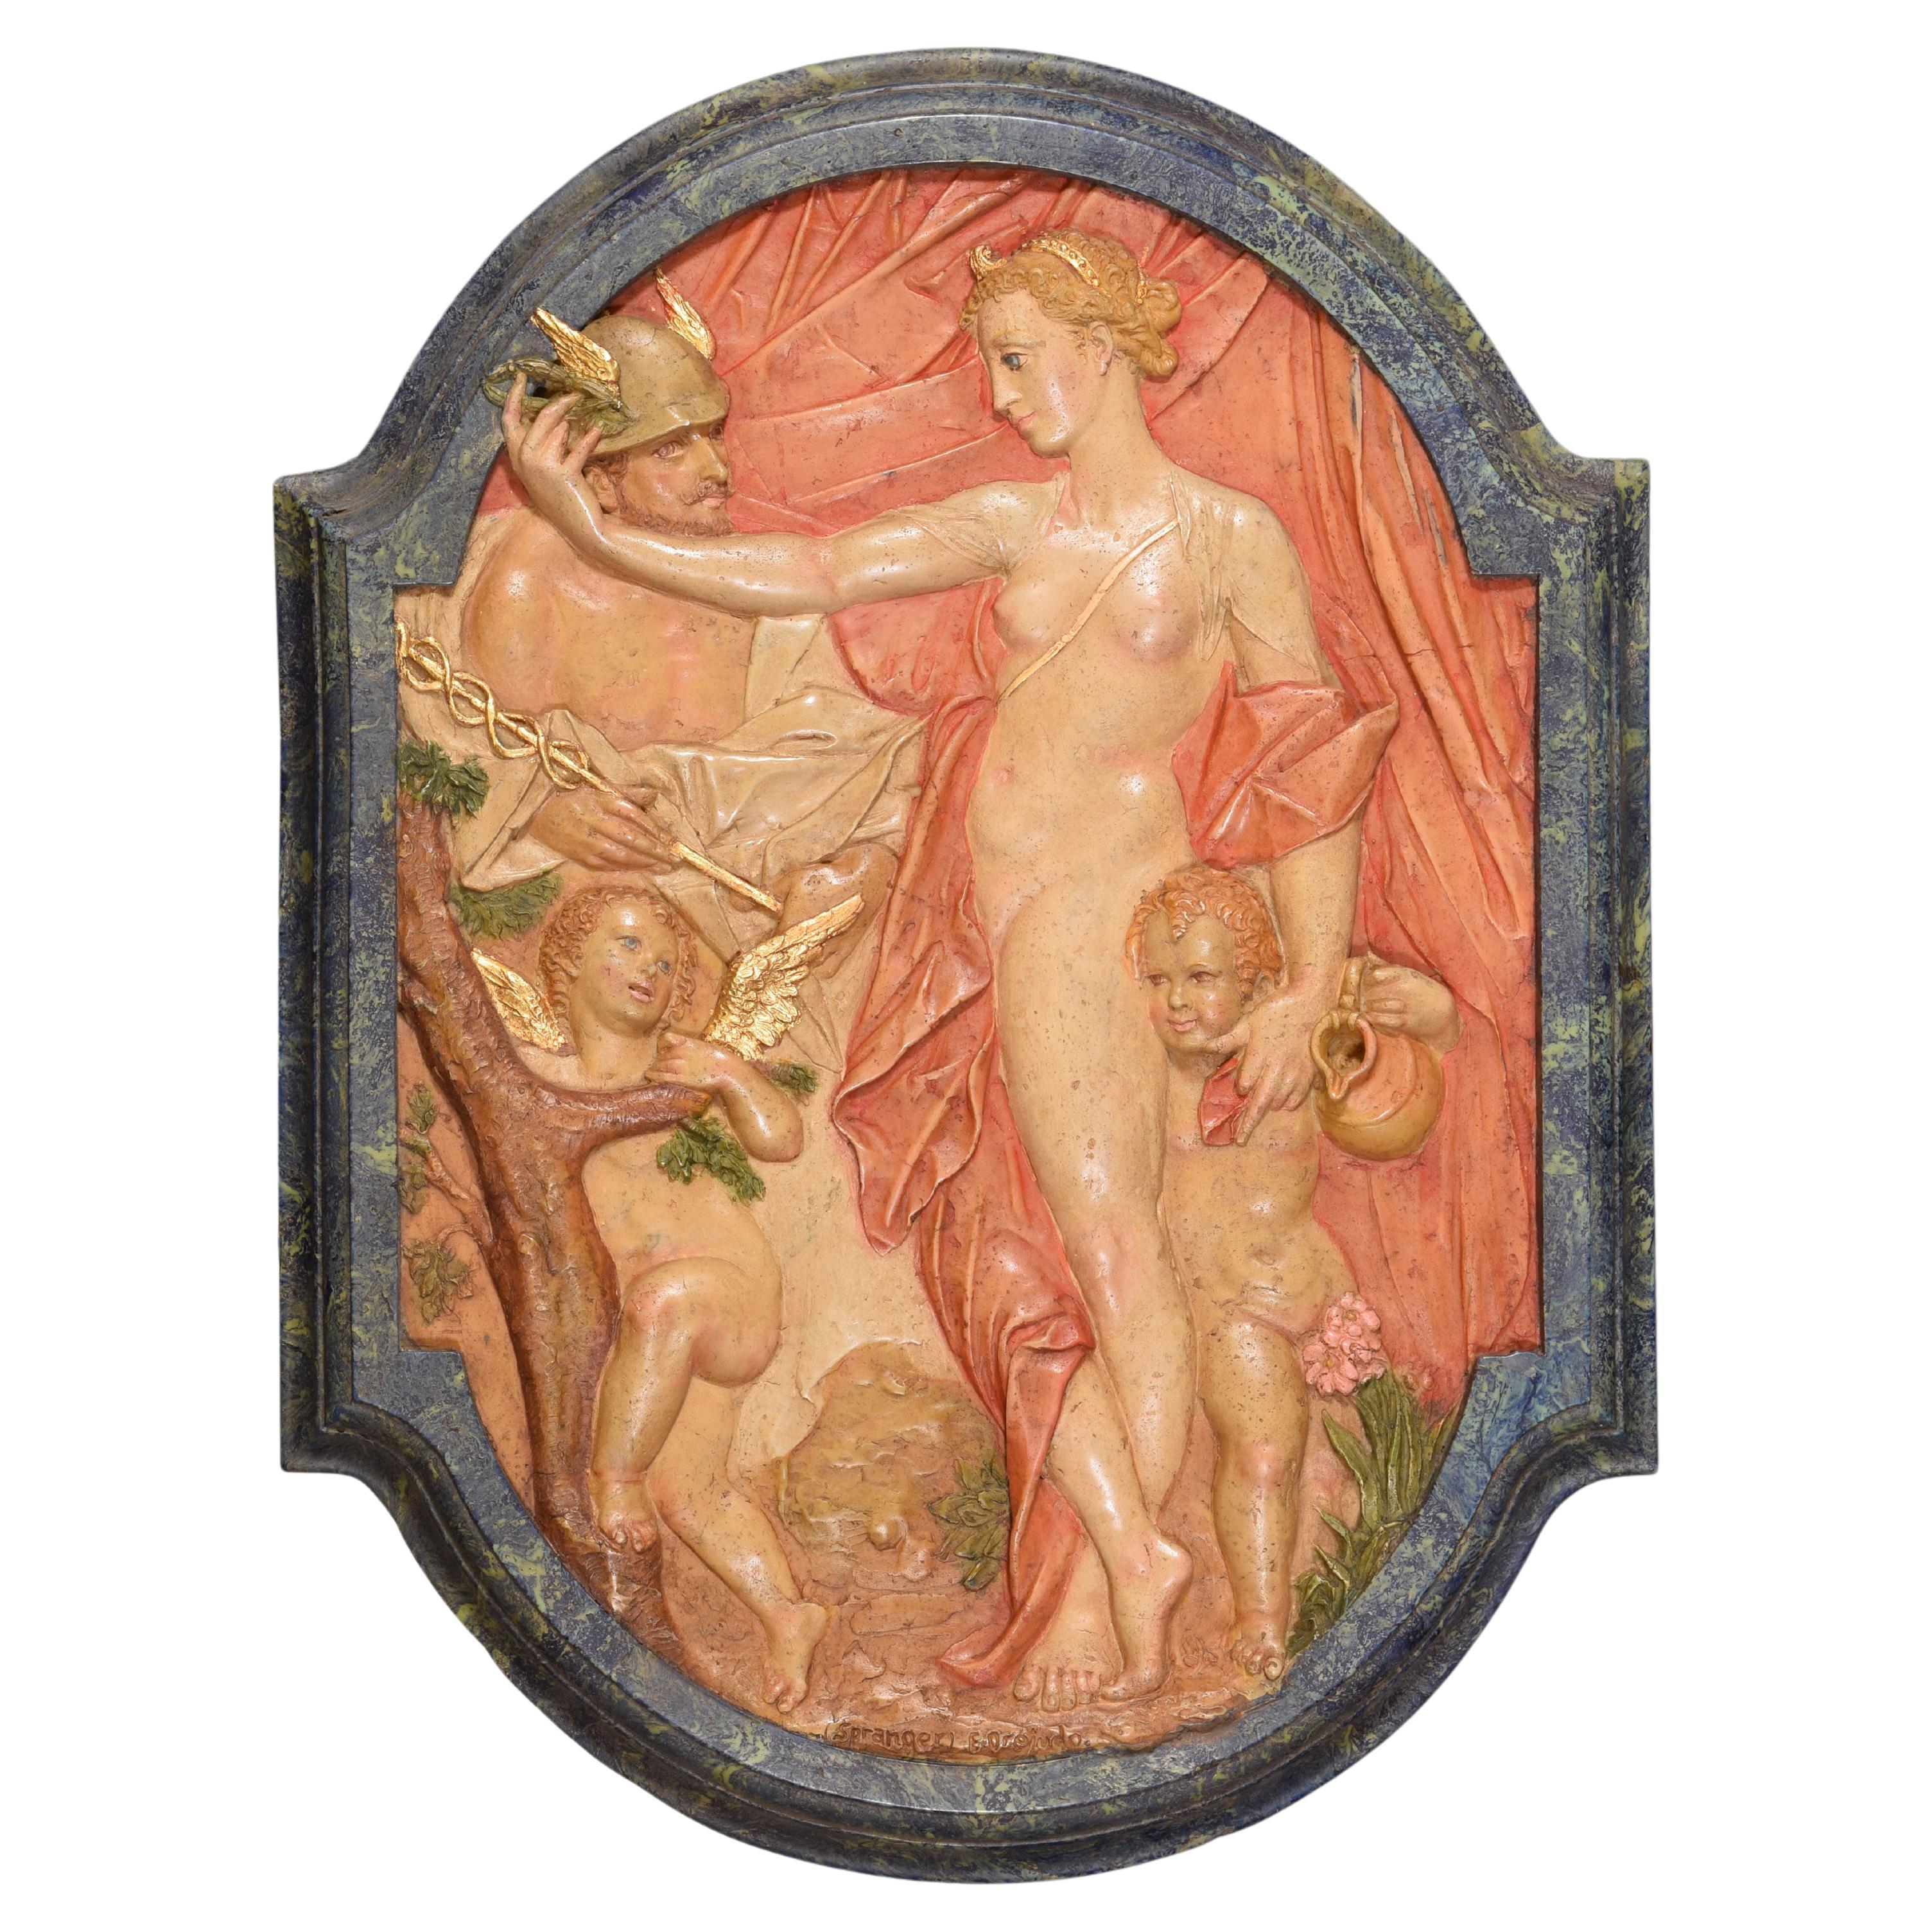 Venus und Mercury, Relief. Geformter Alabaster. 20. Jahrhundert, nach Spranger